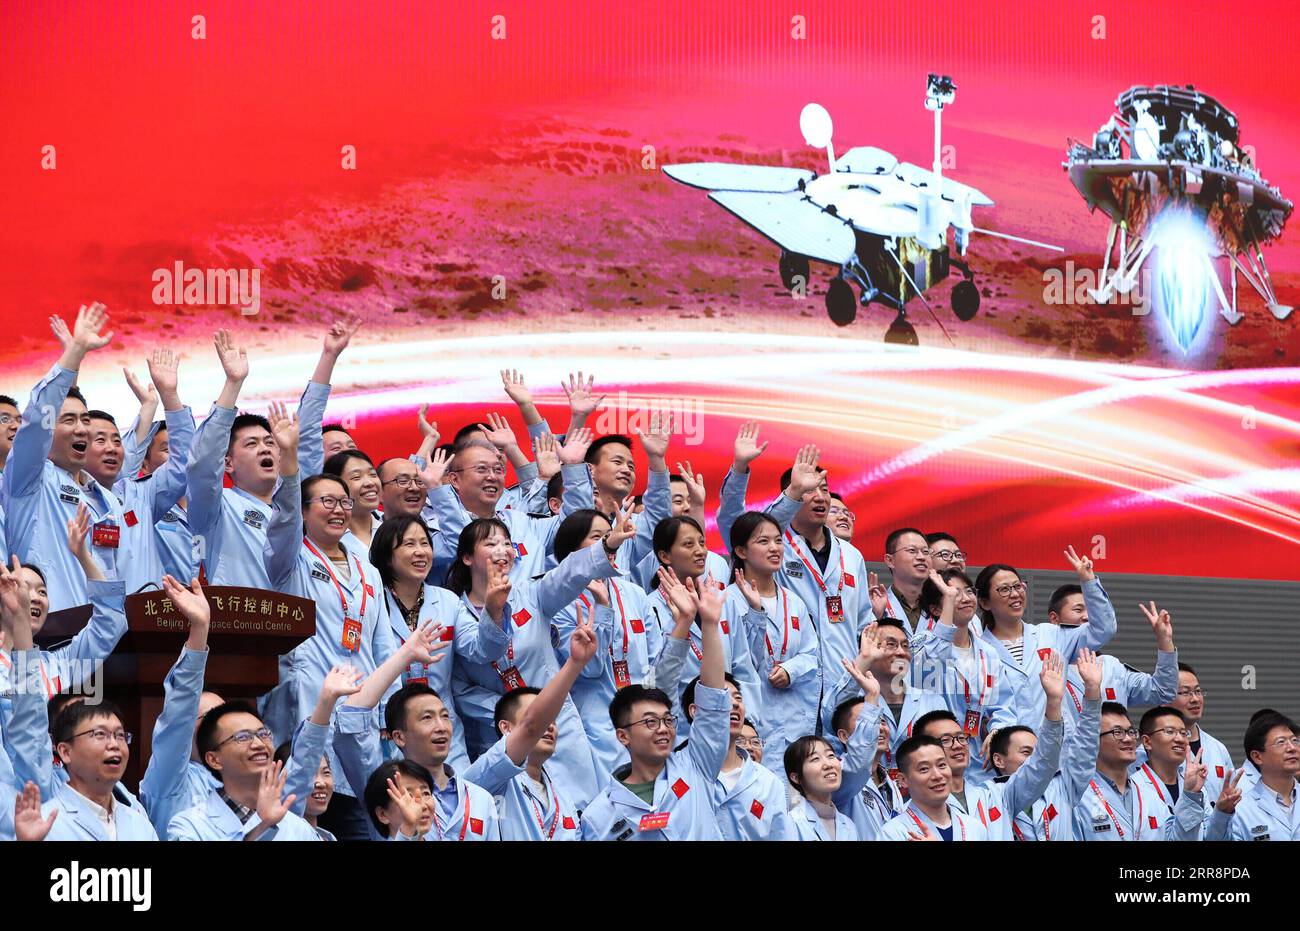 210515 -- PEKING, 15. Mai 2021 -- Technisches Personal feiert nach erfolgreicher Landung der chinesischen Tianwen-1-Sonde auf dem Mars im Beijing Aerospace Control Center in Peking, der Hauptstadt Chinas, am 15. Mai 2021. Der Lander mit Chinas erstem Mars-rover ist auf dem roten Planeten gelandet, bestätigte die chinesische nationale Raumfahrtbehörde CNSA am Samstagmorgen. EyesonSci CHINA-BEIJING-TIANWEN-1 PROBE-MARS-LANDUNG CN JinxLiwang PUBLICATIONxNOTxINxCHN Stockfoto